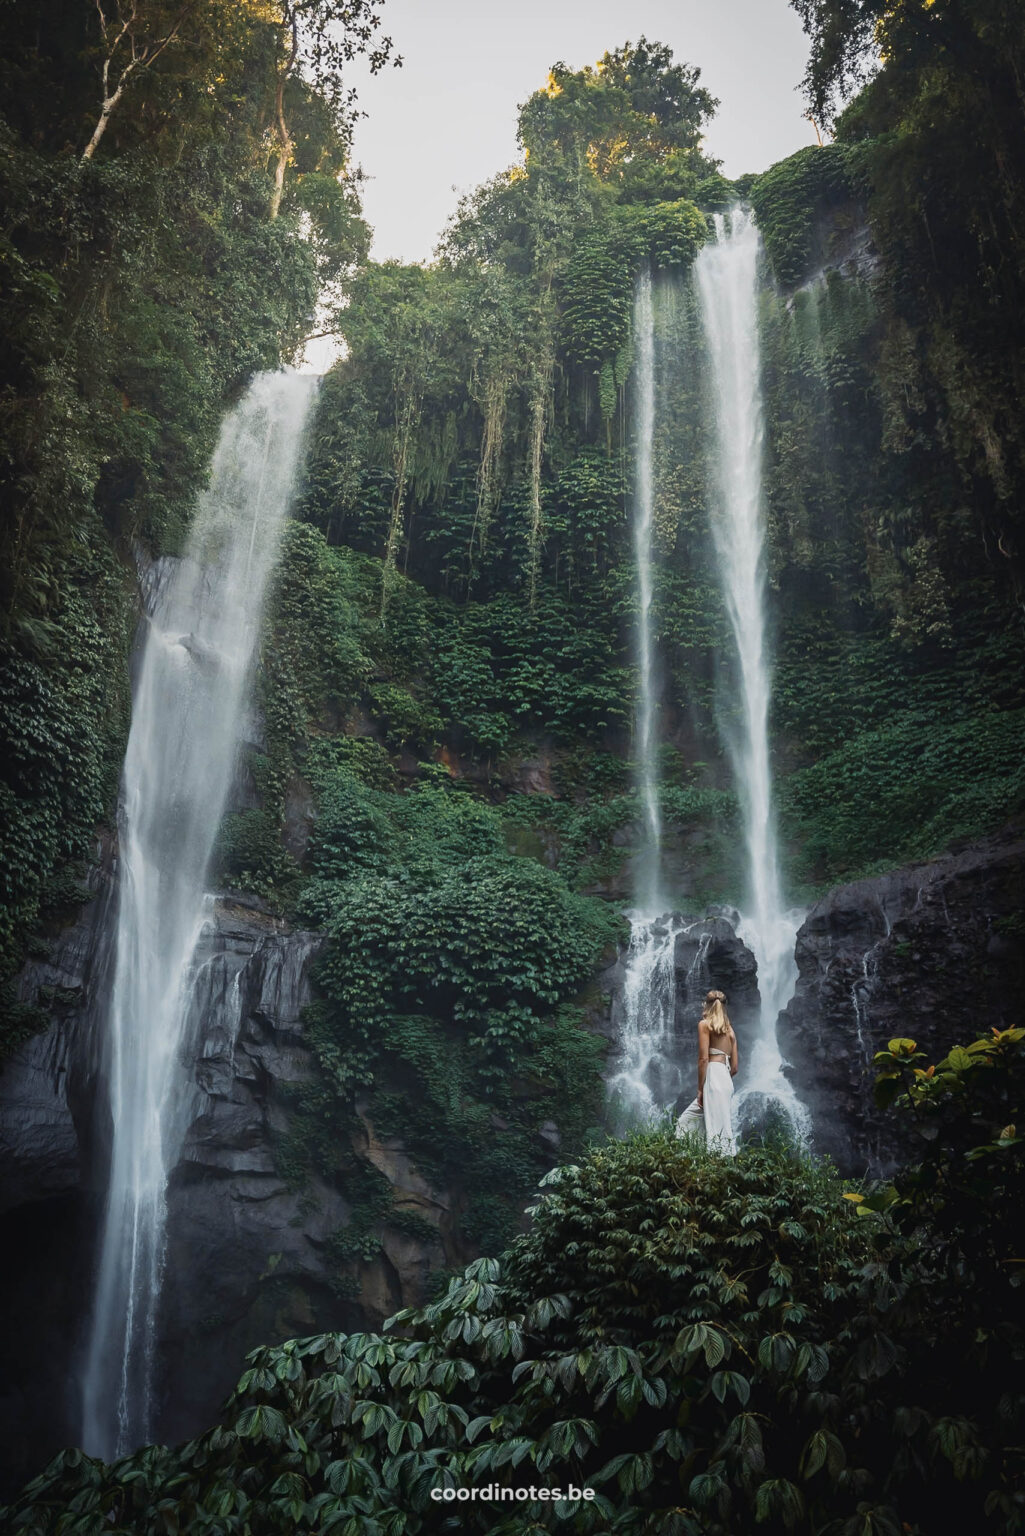 Sekumpul Waterfall, Bali